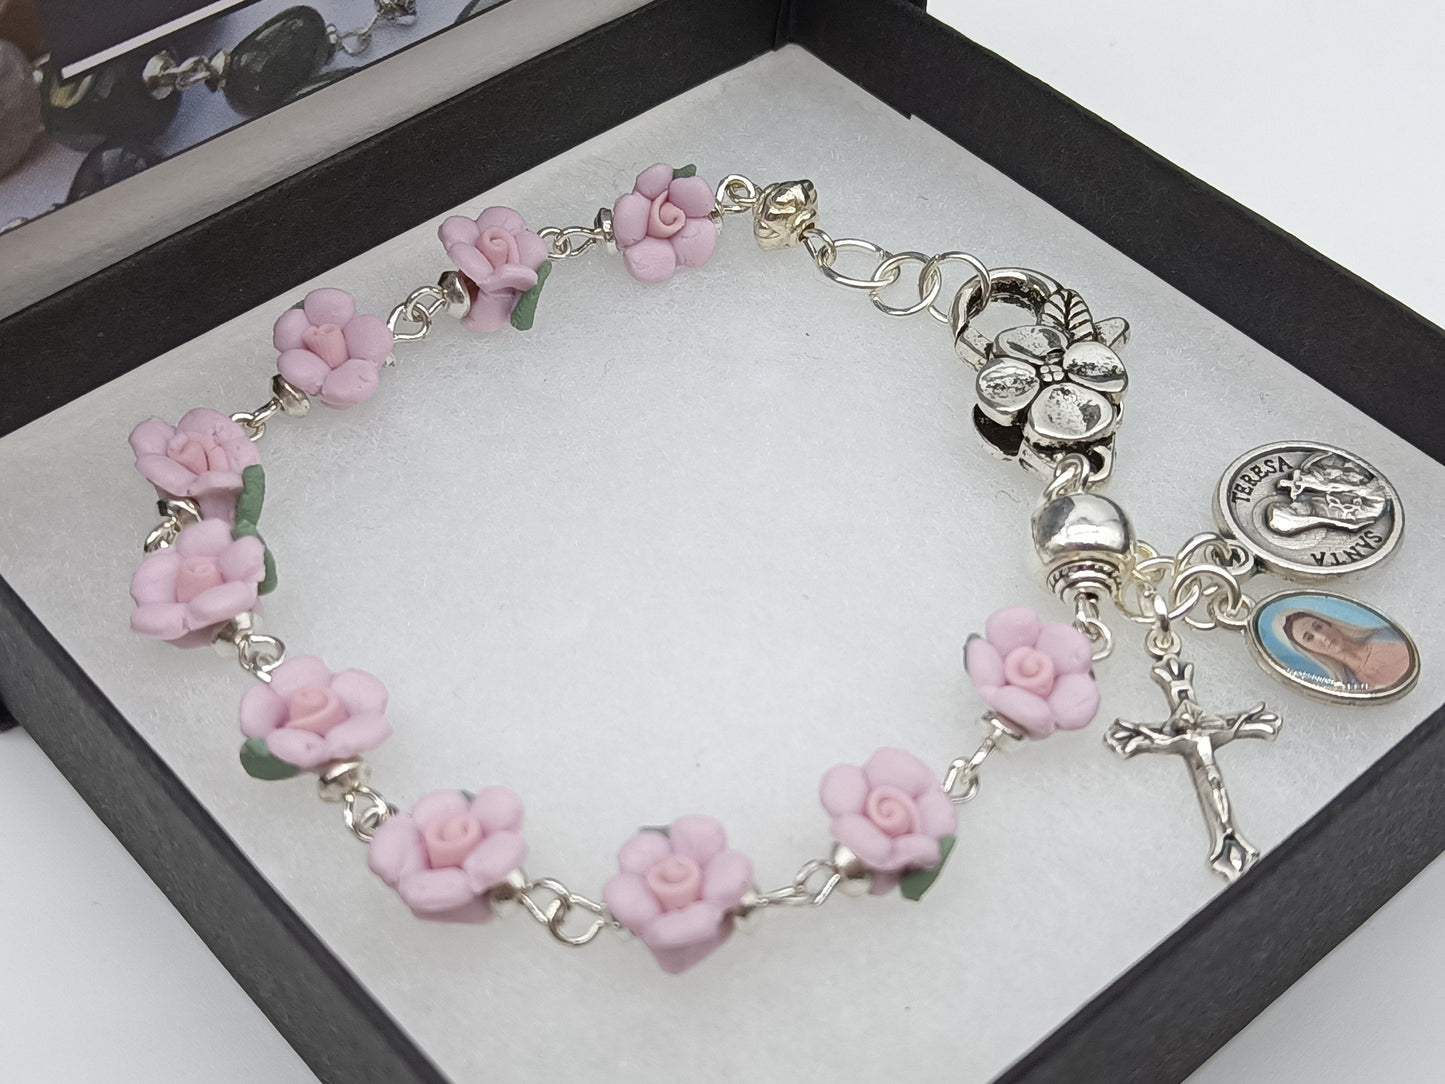 St Therese Rosary bracelet, Single decade rose bracelet, Spiritual gift. Pocket Rosary, Travel Car Visor Rosary